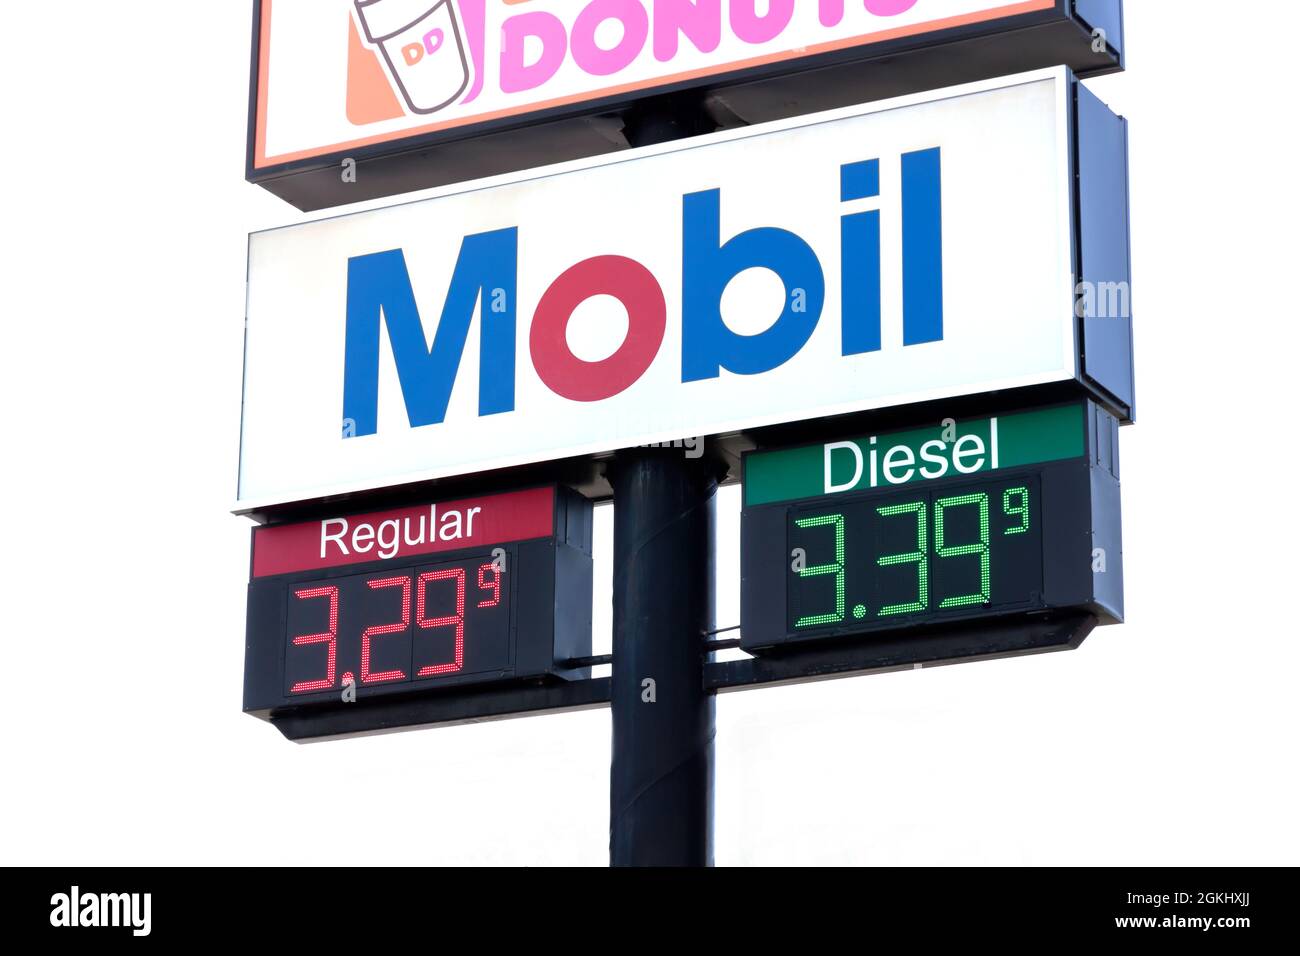 Mobil firma anunciando precios regulares y de gas diesel. Foto de stock